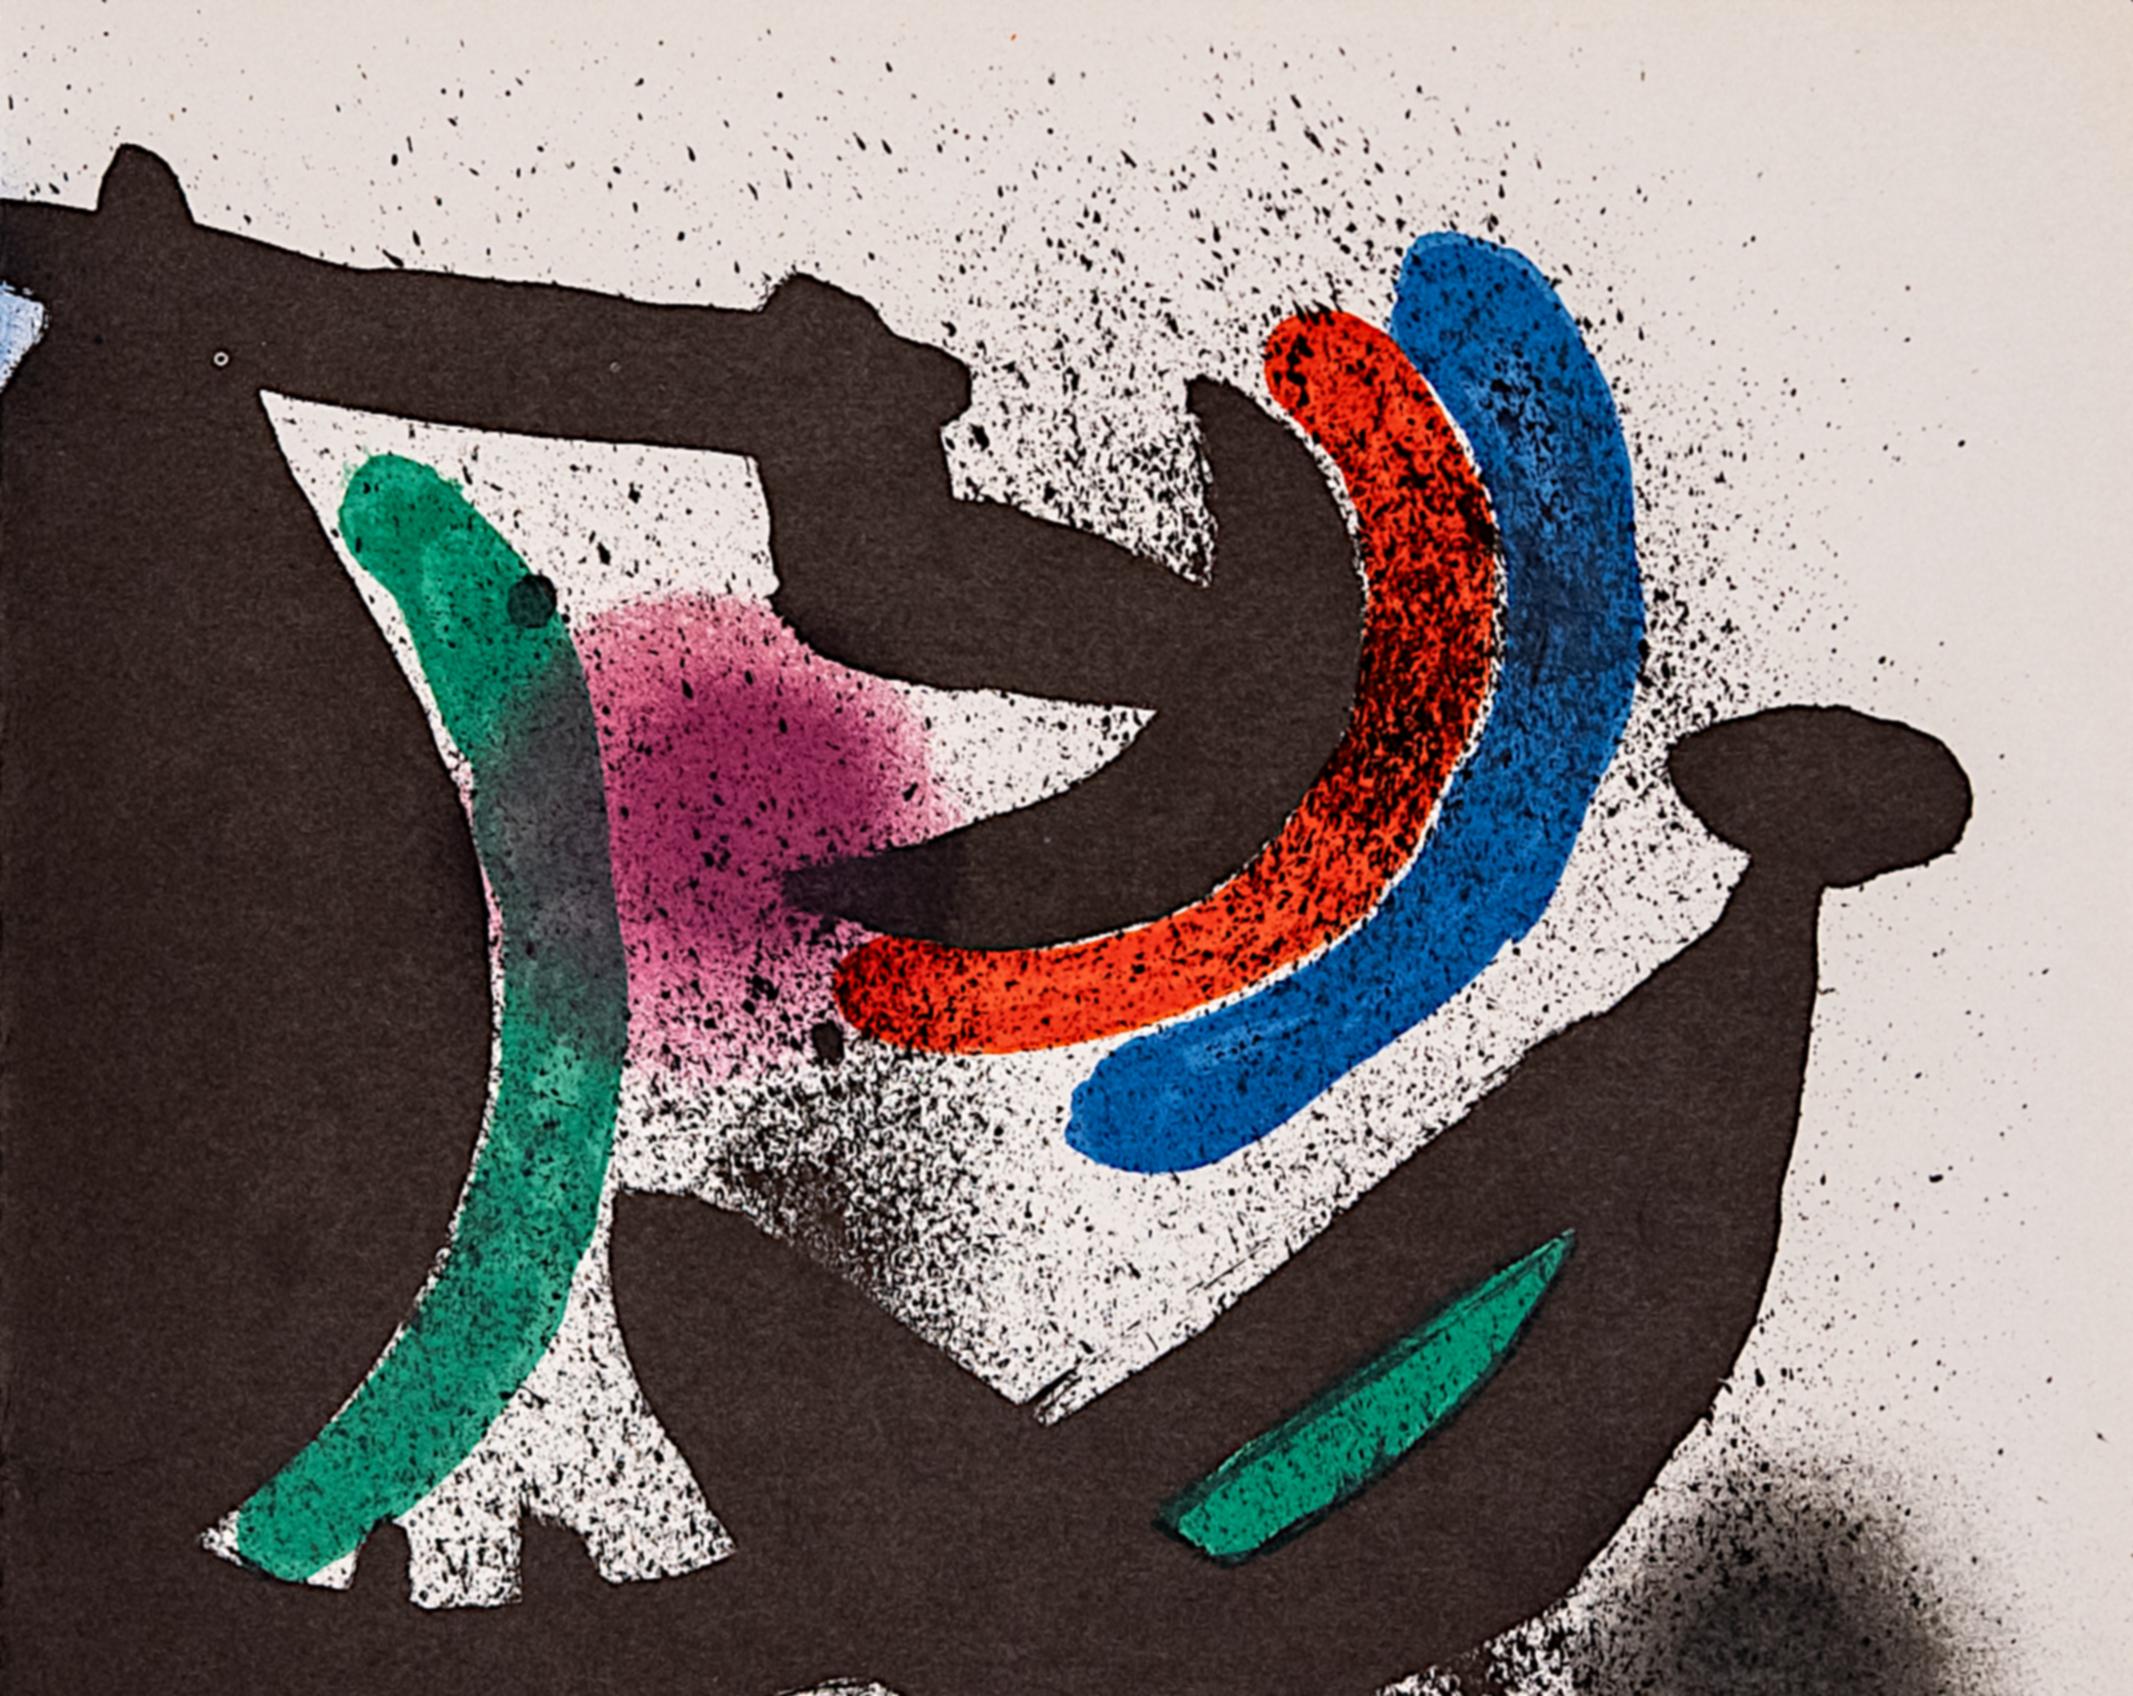 Litografo (Band I) Spanische Ausgabe von 1972.

Katalog der Werke: Mourlot 864.

Leichte Buchfalte in der Mitte des Papiers.

Mirós Entwicklung einer neuen Bildsprache führte zu einer konsequenten Beschränkung auf die Grundfarben Schwarz, Grün,